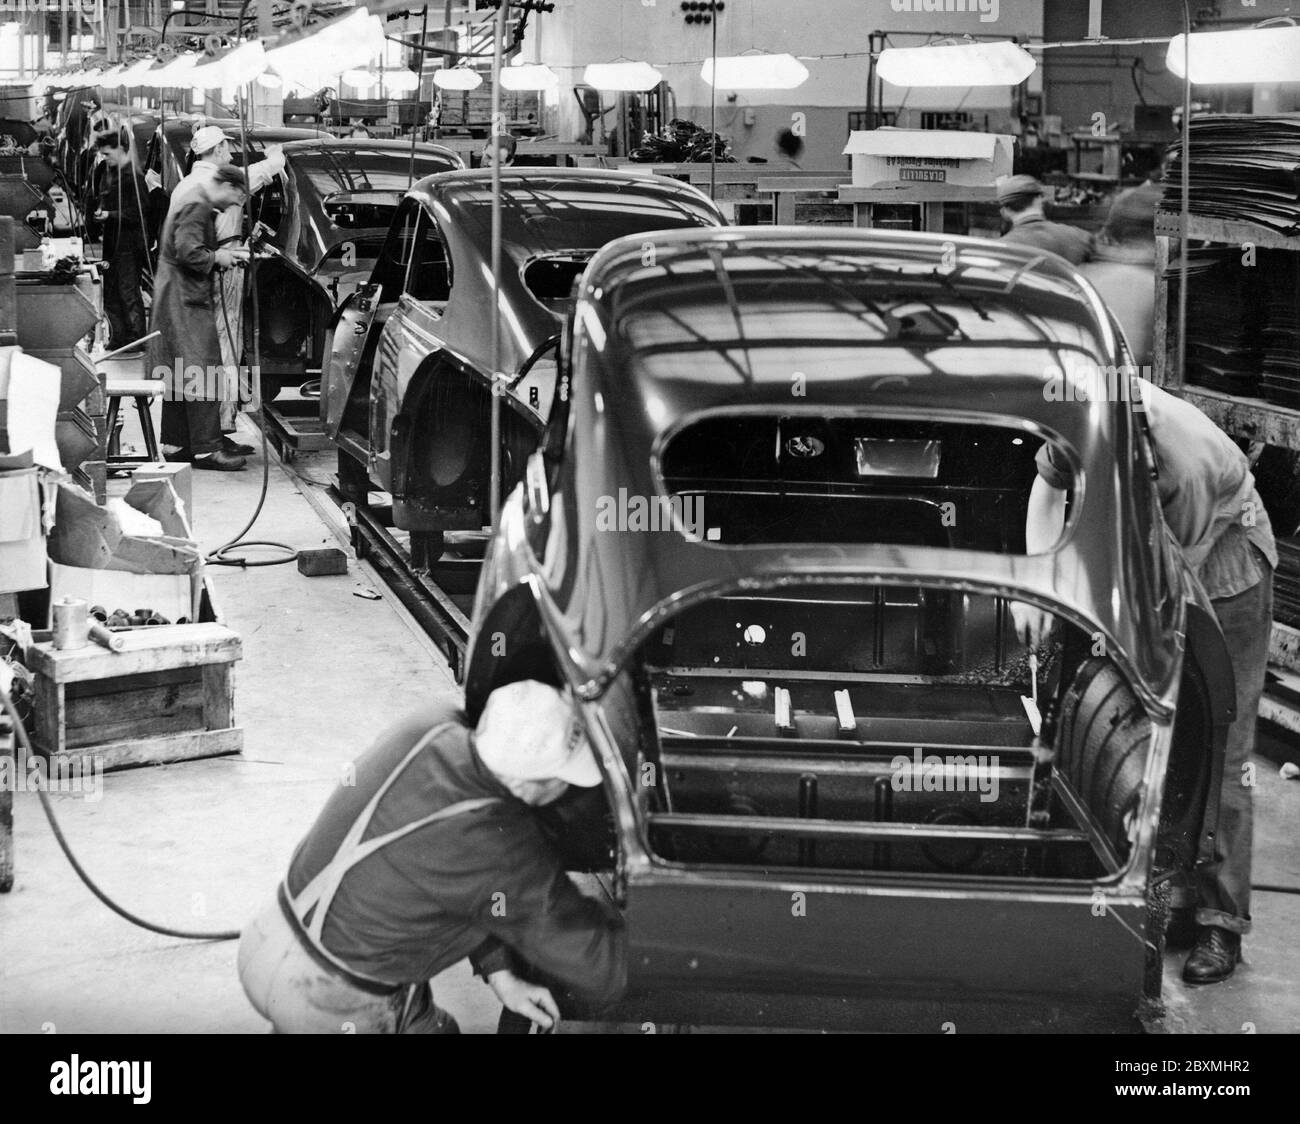 Automobilbau in den 1950er Jahren. Die Saab Autofabrik in Trollhättan Schweden mit ihrer Produktionslinie. Arbeiter an einer Montagelinie fügen Teile hinzu, während die Karosserien von Arbeitsplatz zu Arbeitsplatz wechseln, bis die Endmontage hergestellt ist. Das Modell ist Saab 93. Ein Dreizylinder-Zweitaktmotor mit 33 ps. Stockfoto